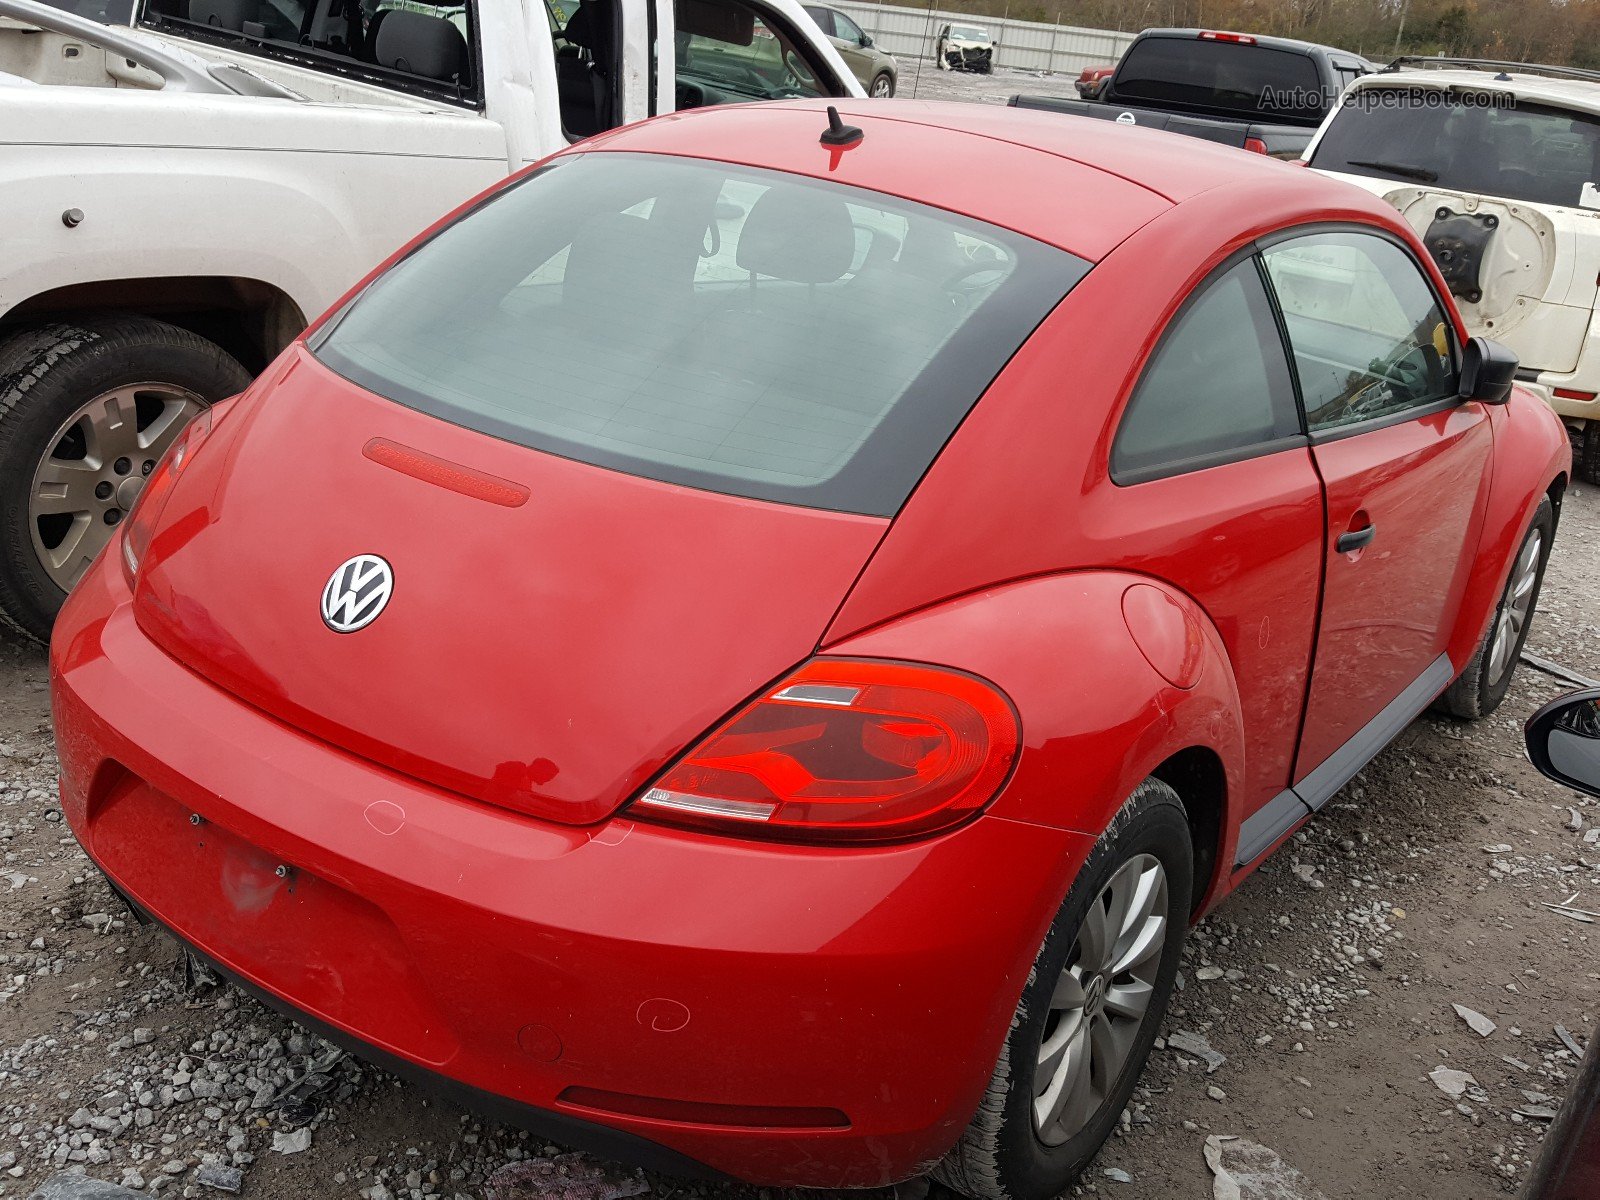 2014 Volkswagen Beetle  Red vin: 3VWFP7ATXEM632061